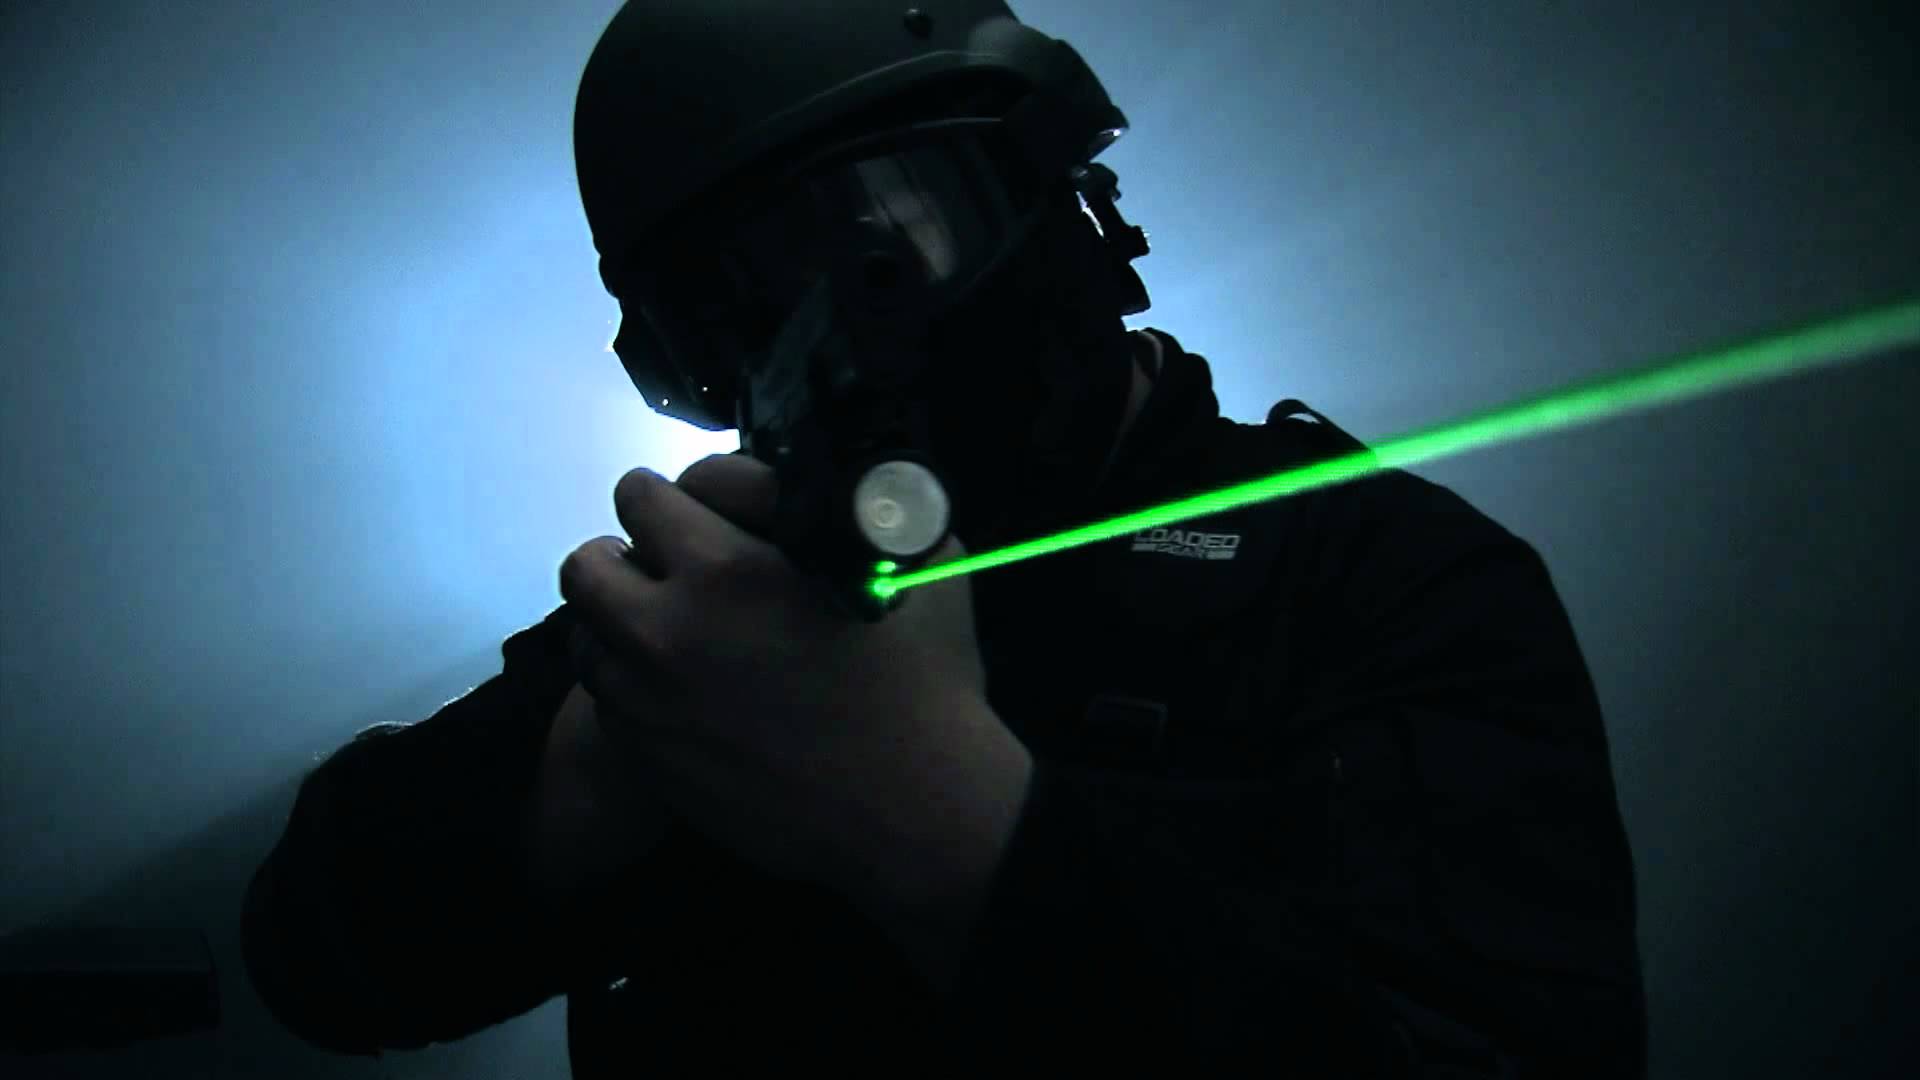 green laser sight for pistol